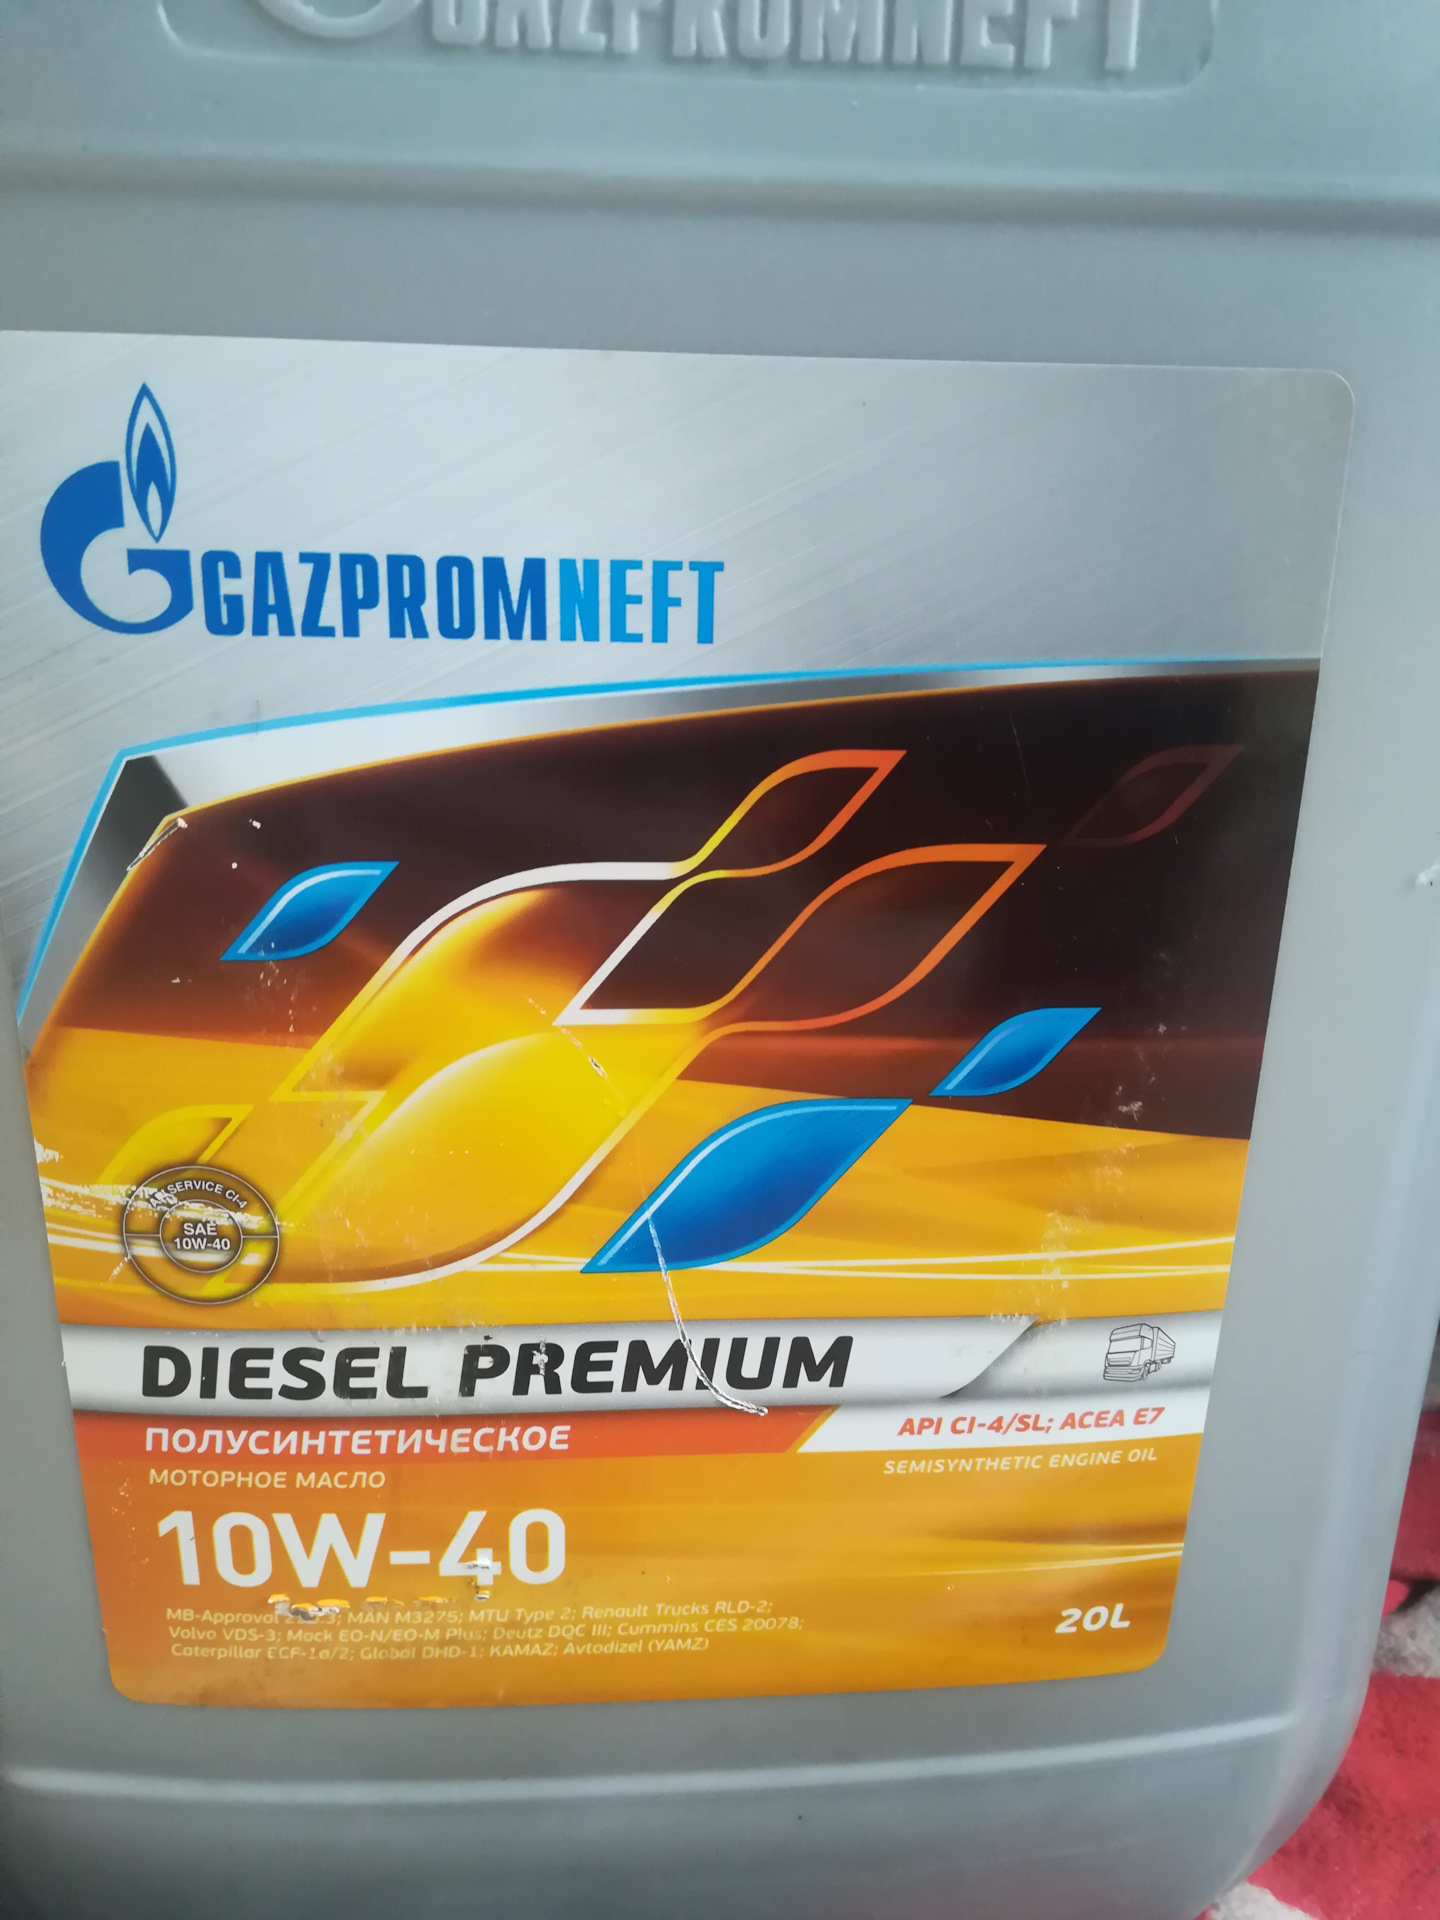 Gazpromneft diesel 10w 40. Газпромнефть дизель премиум 10w 40. Diesel Premium 10w-40 CL-4. Gazpromneft Diesel Premium 10w-40 одобрение КАМАЗ.